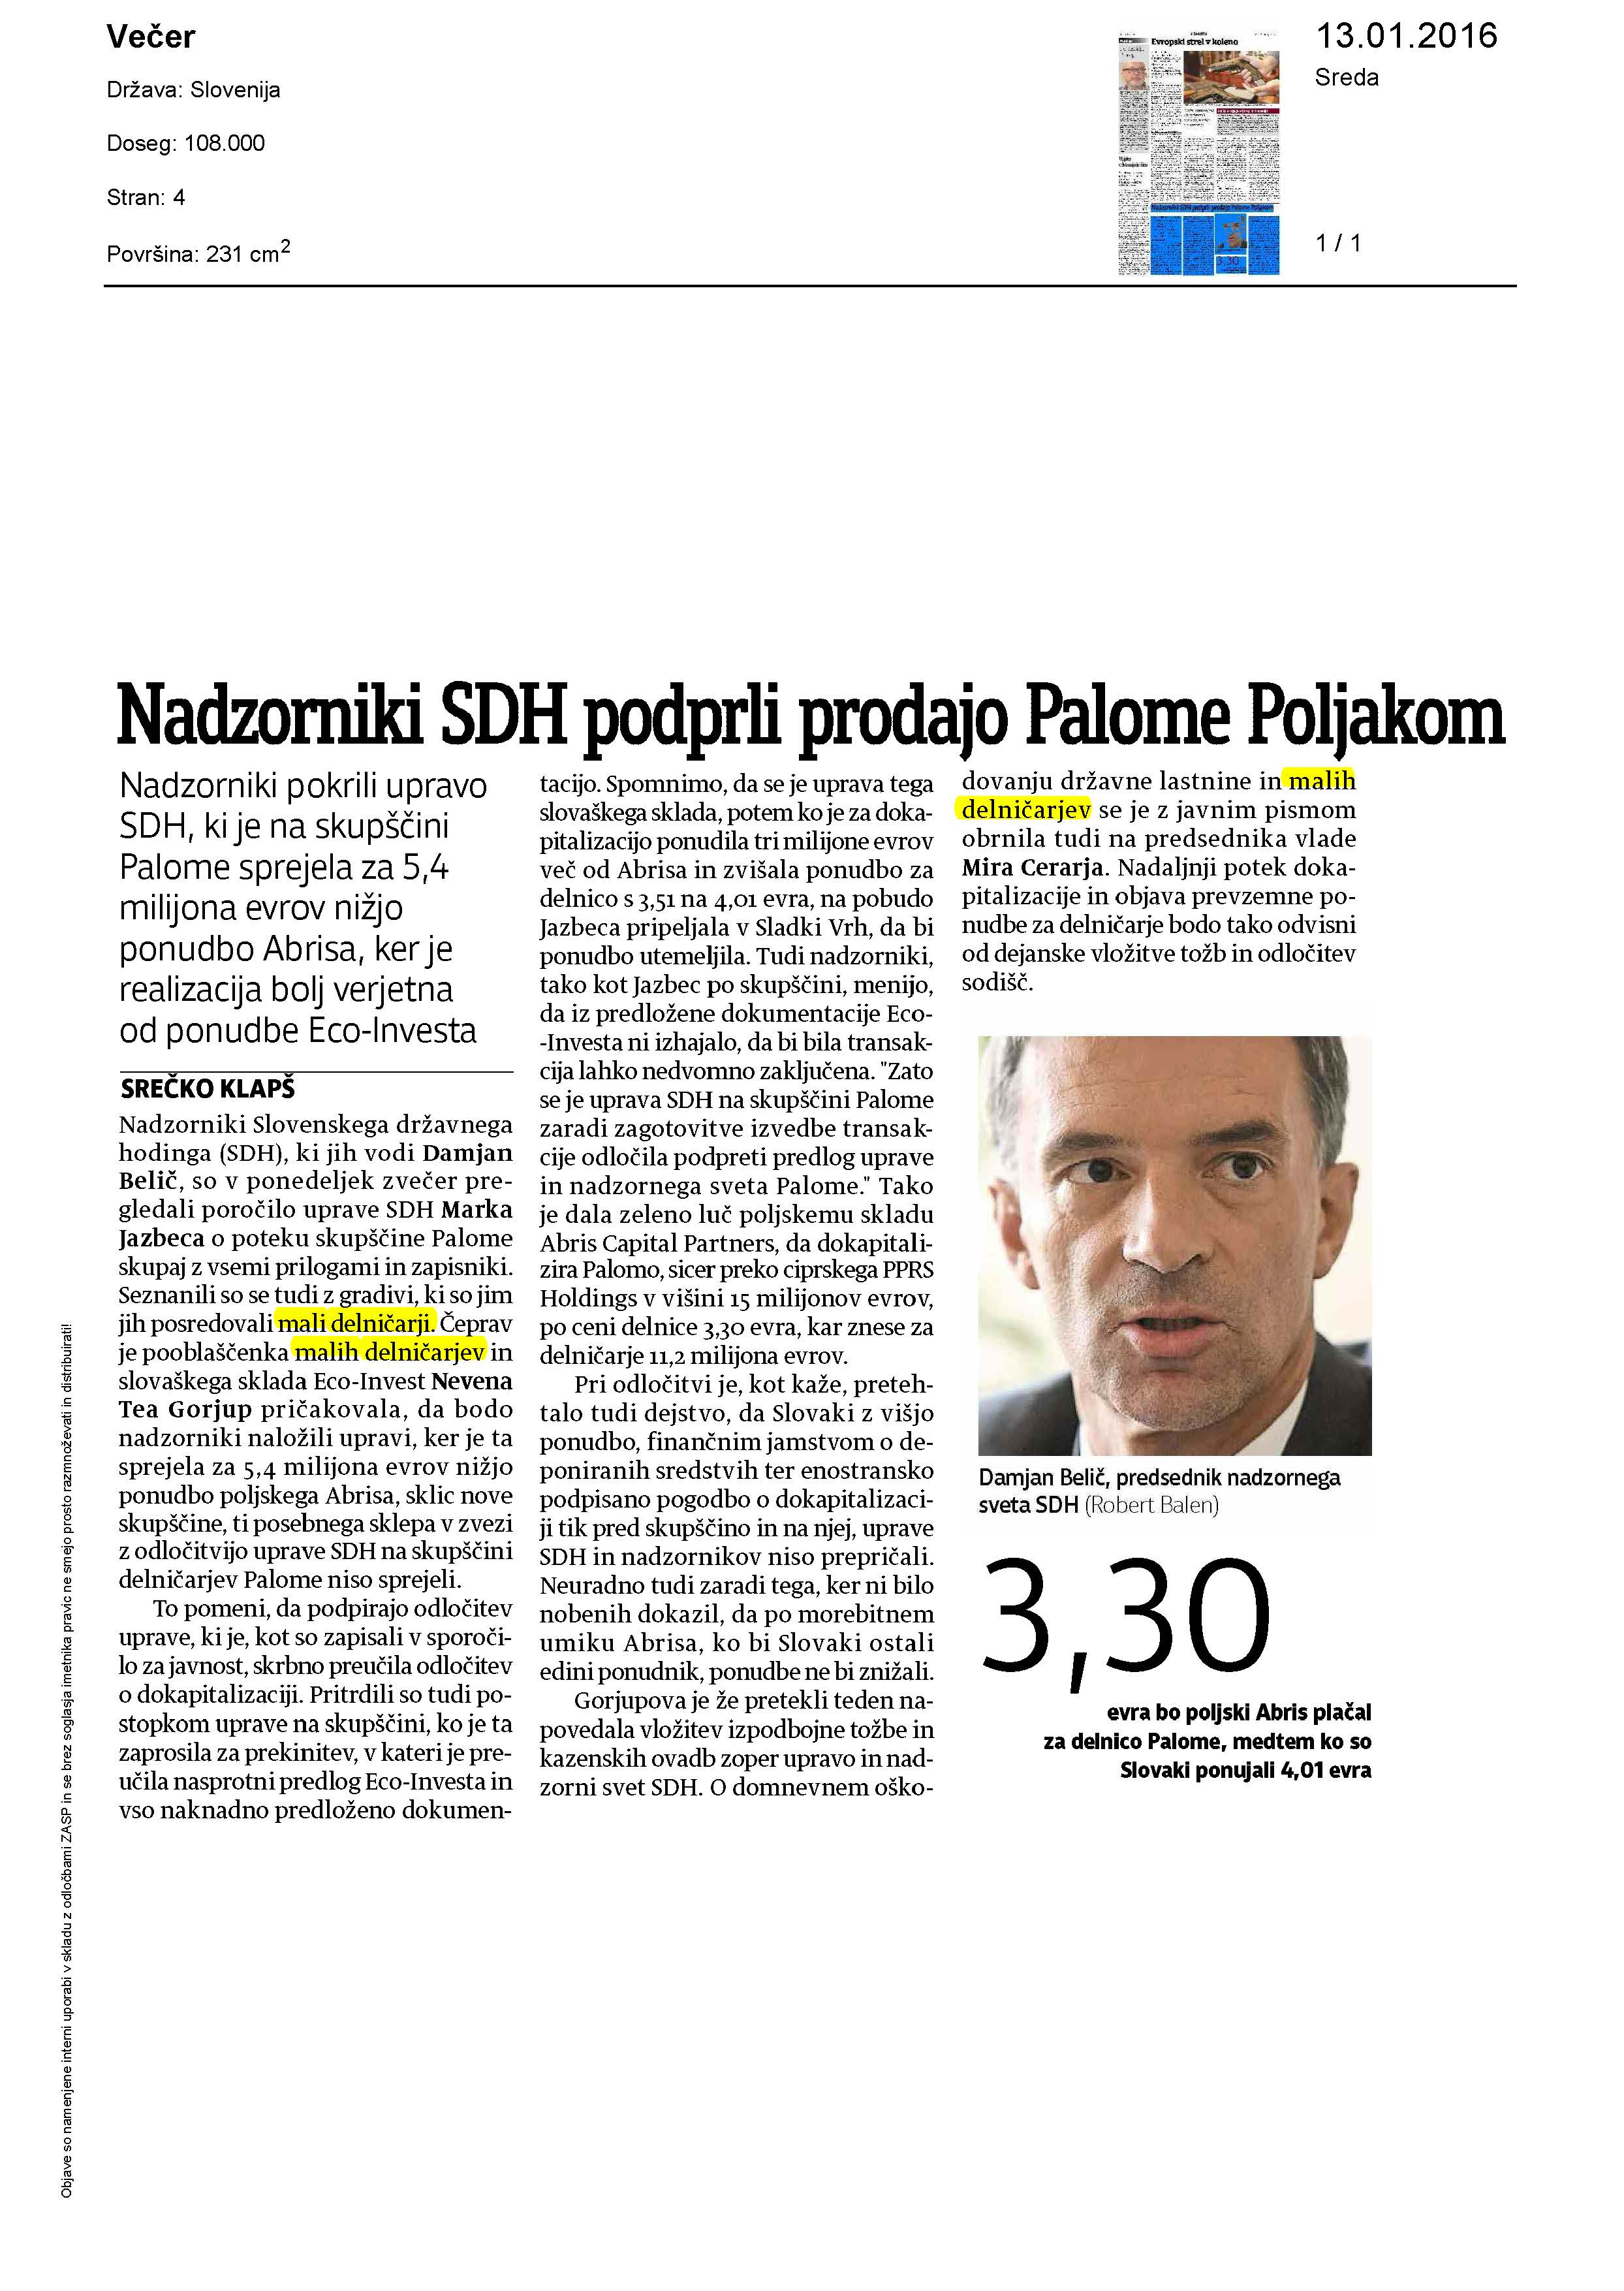 Nadzorniki SDH podprli prodajo Palome Poljakom